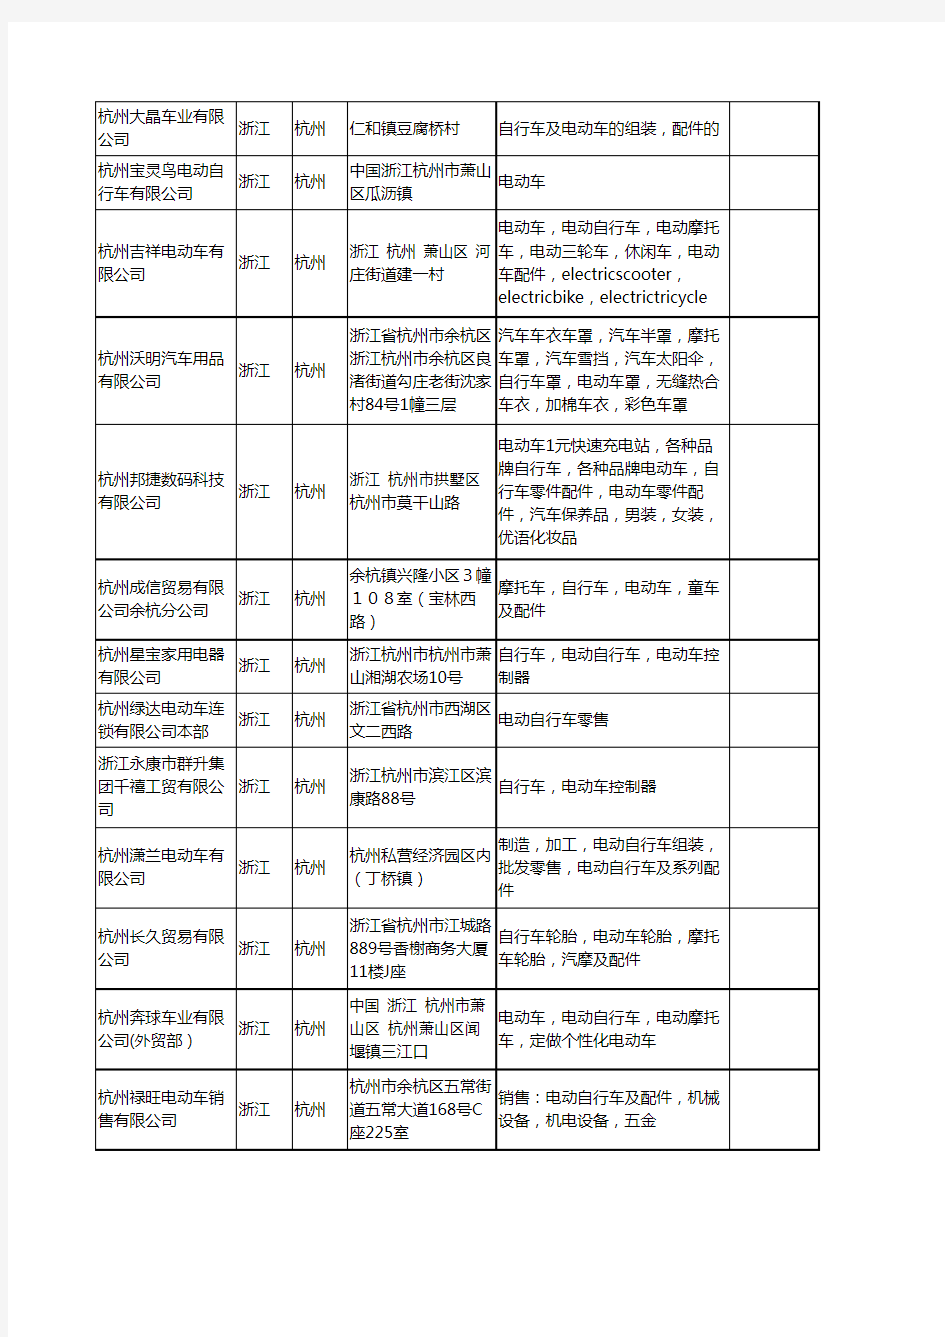 新版浙江省杭州电动车自行车工商企业公司商家名录名单联系方式大全237家